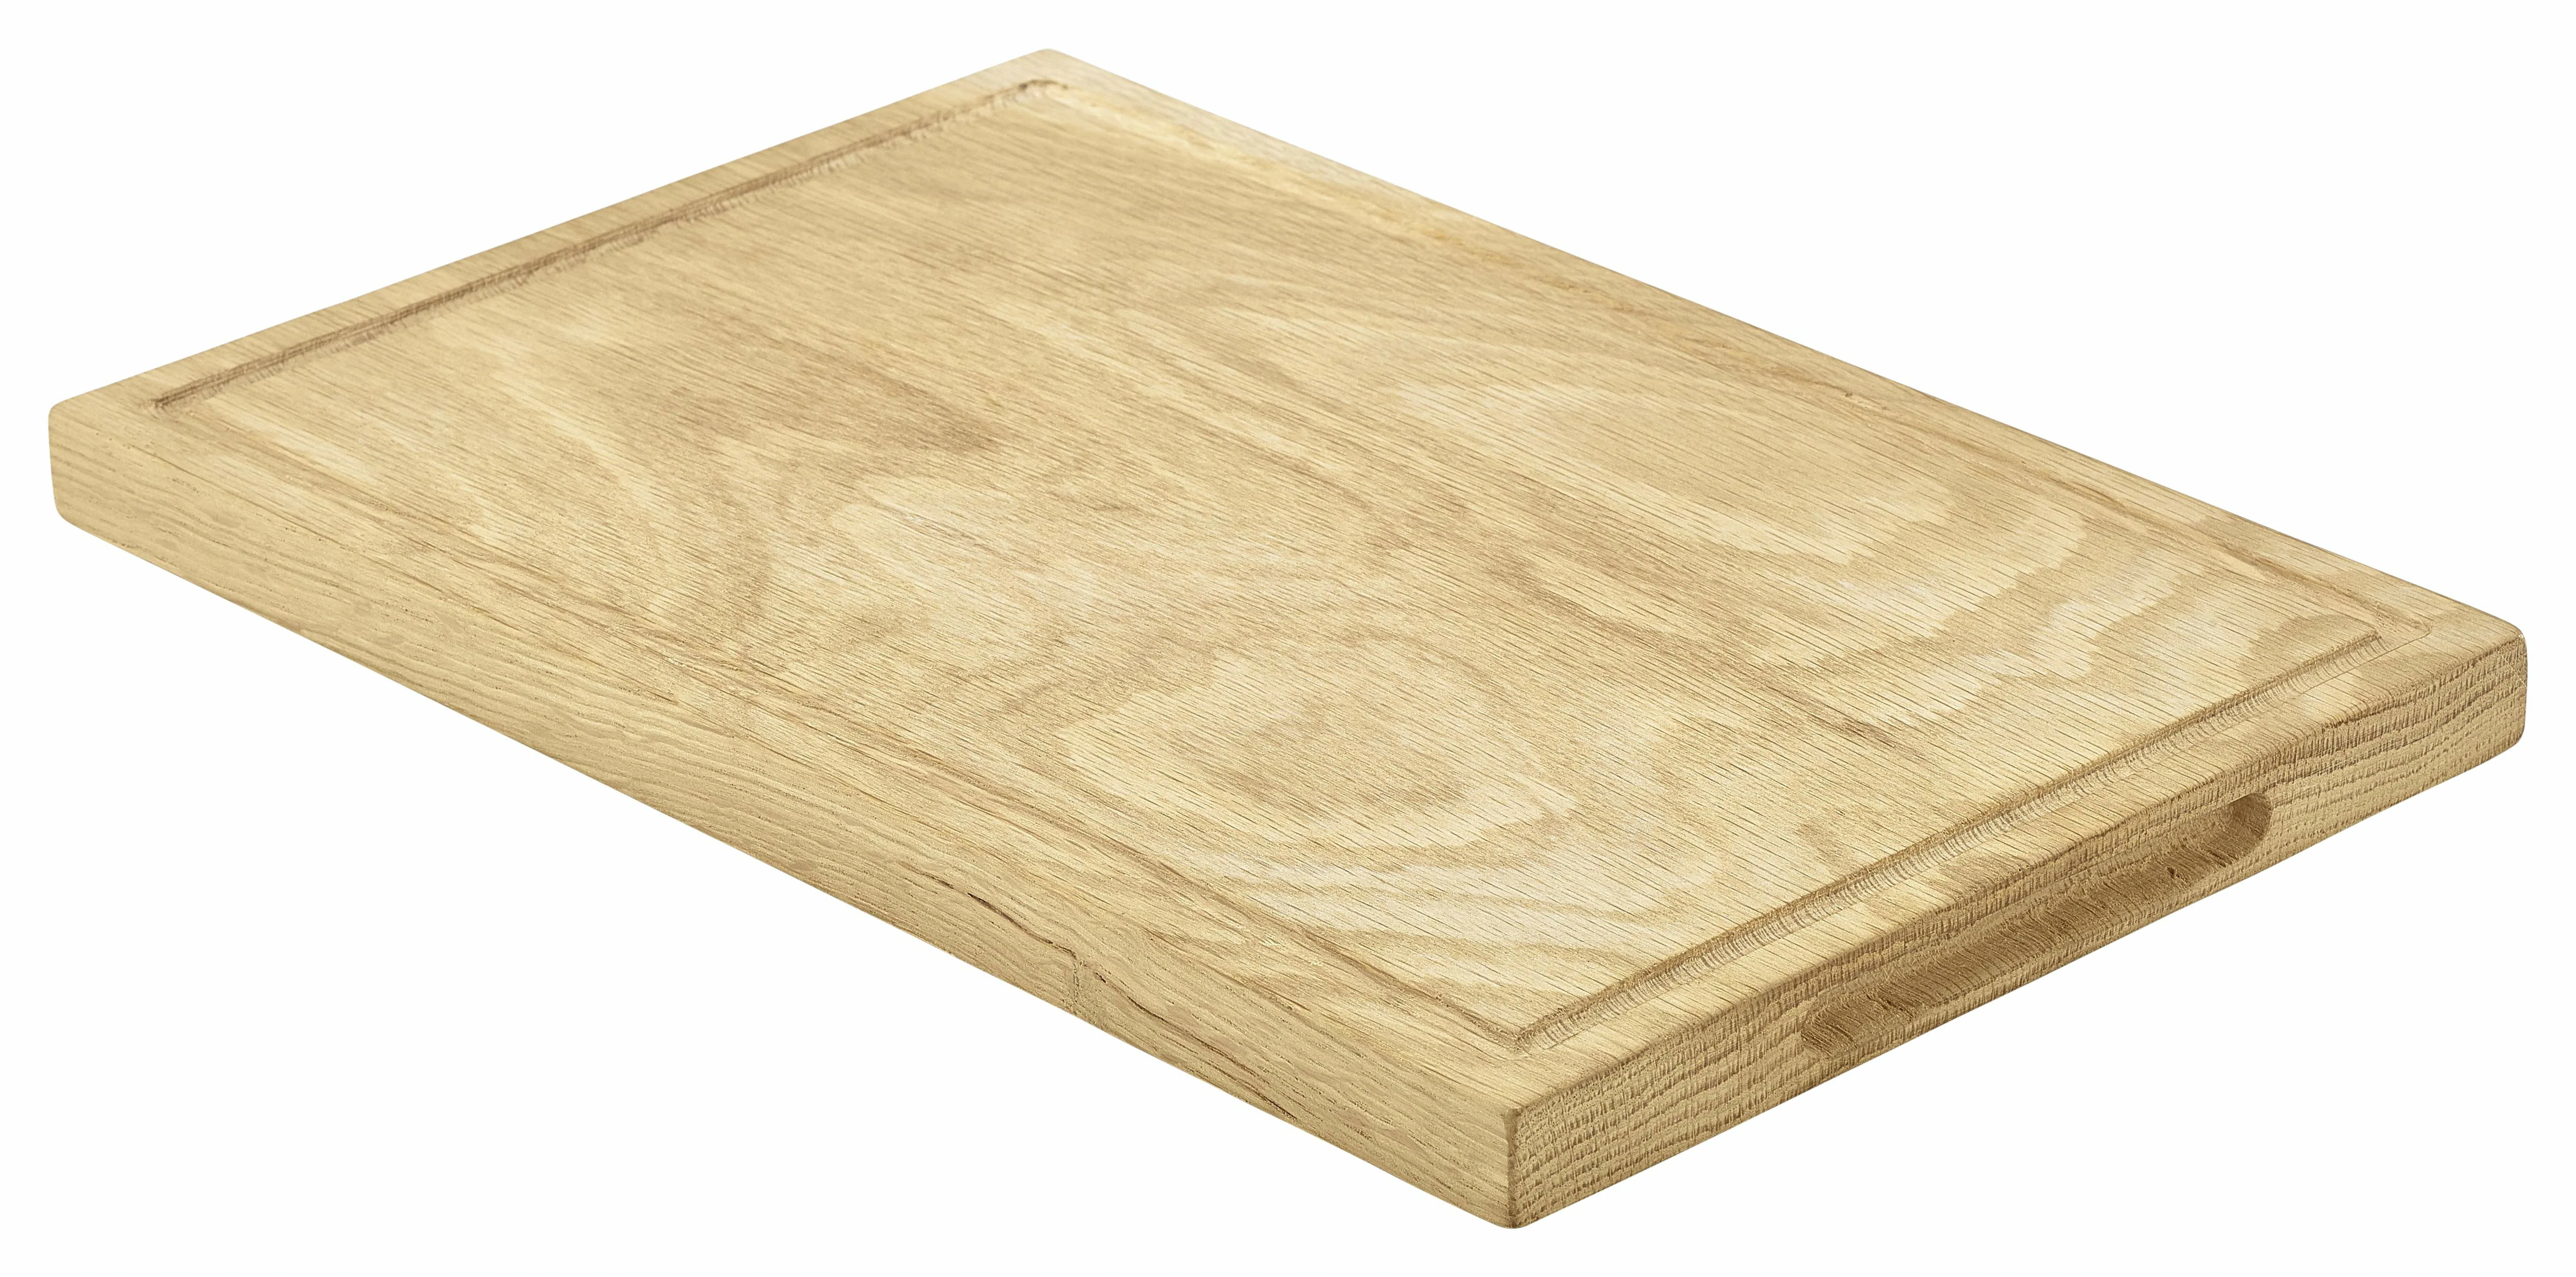 Oak Wood Serving Board 34 x 22 x 2cm